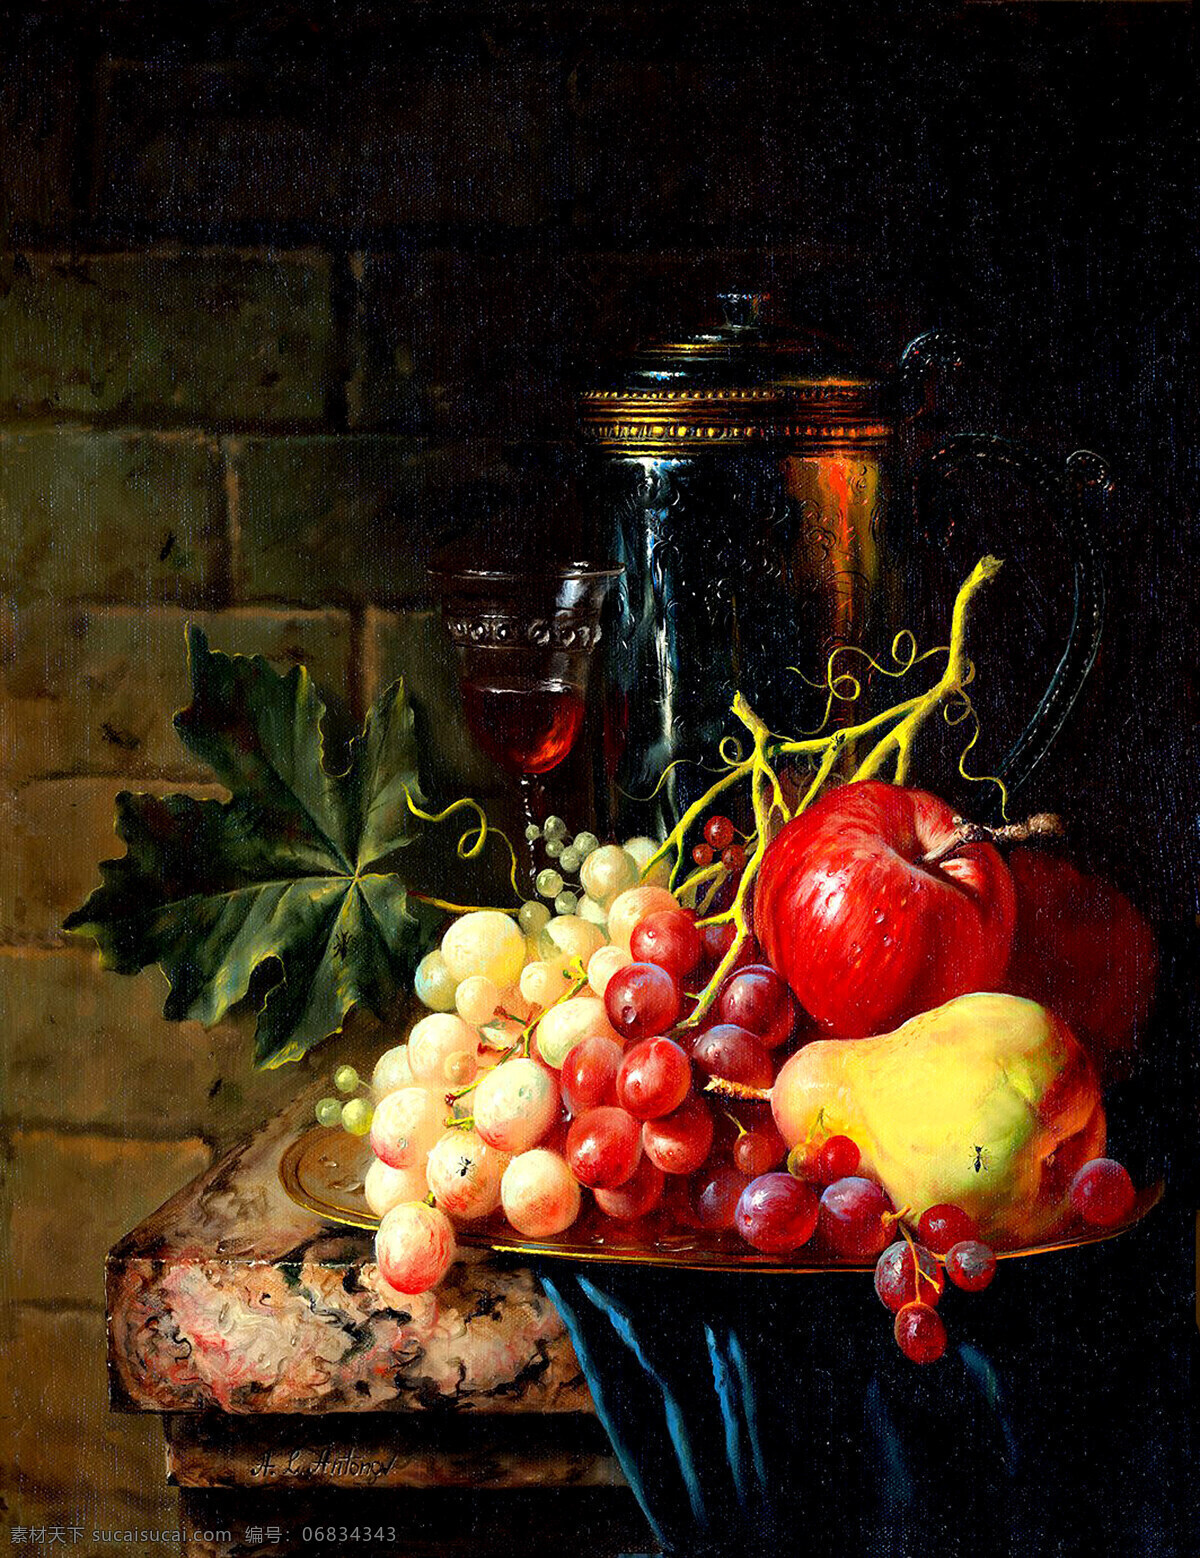 静物画 美术 绘画 油画 水果 桌台 葡萄 鸭梨 红苹果 瓷瓶 叶子 室内 油画艺术 油画作品3 绘画书法 文化艺术